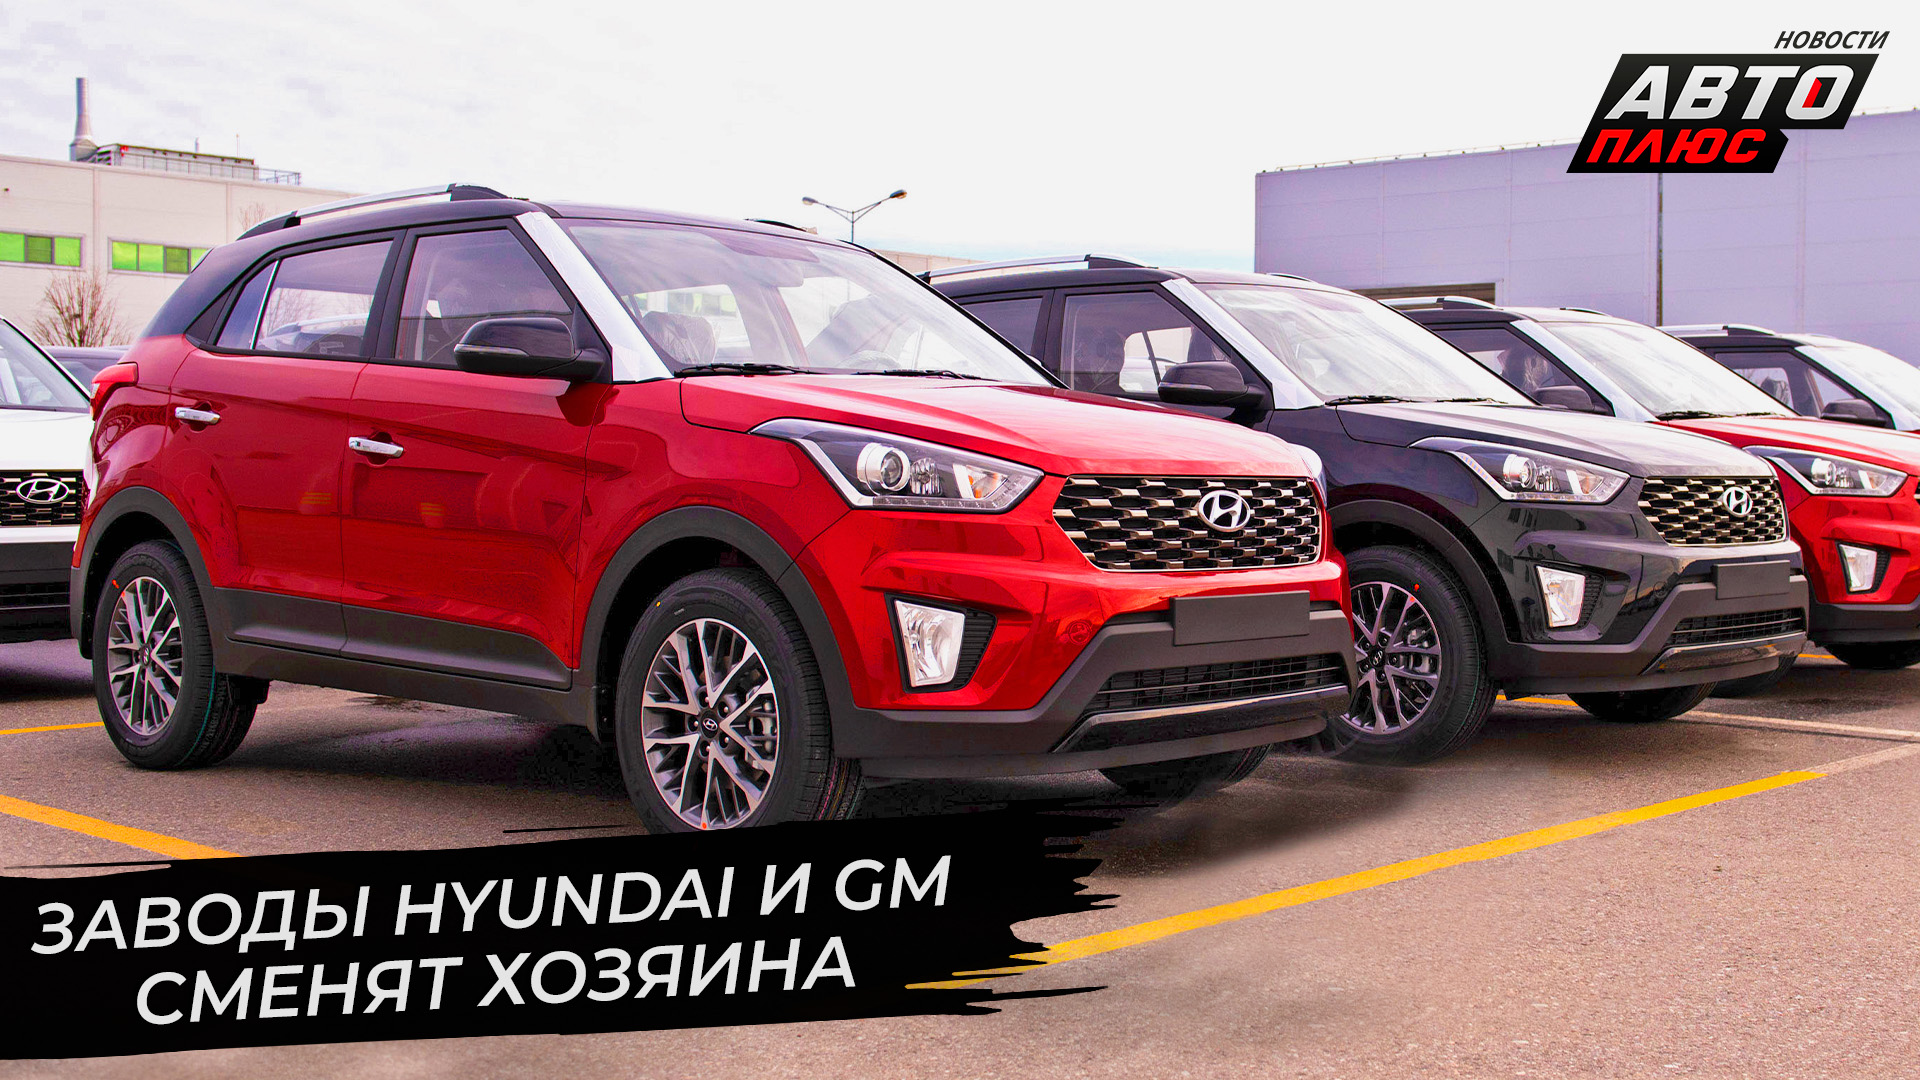 Заводы Hyundai и GM нашли нового владельца ? Новости с колёс №2770